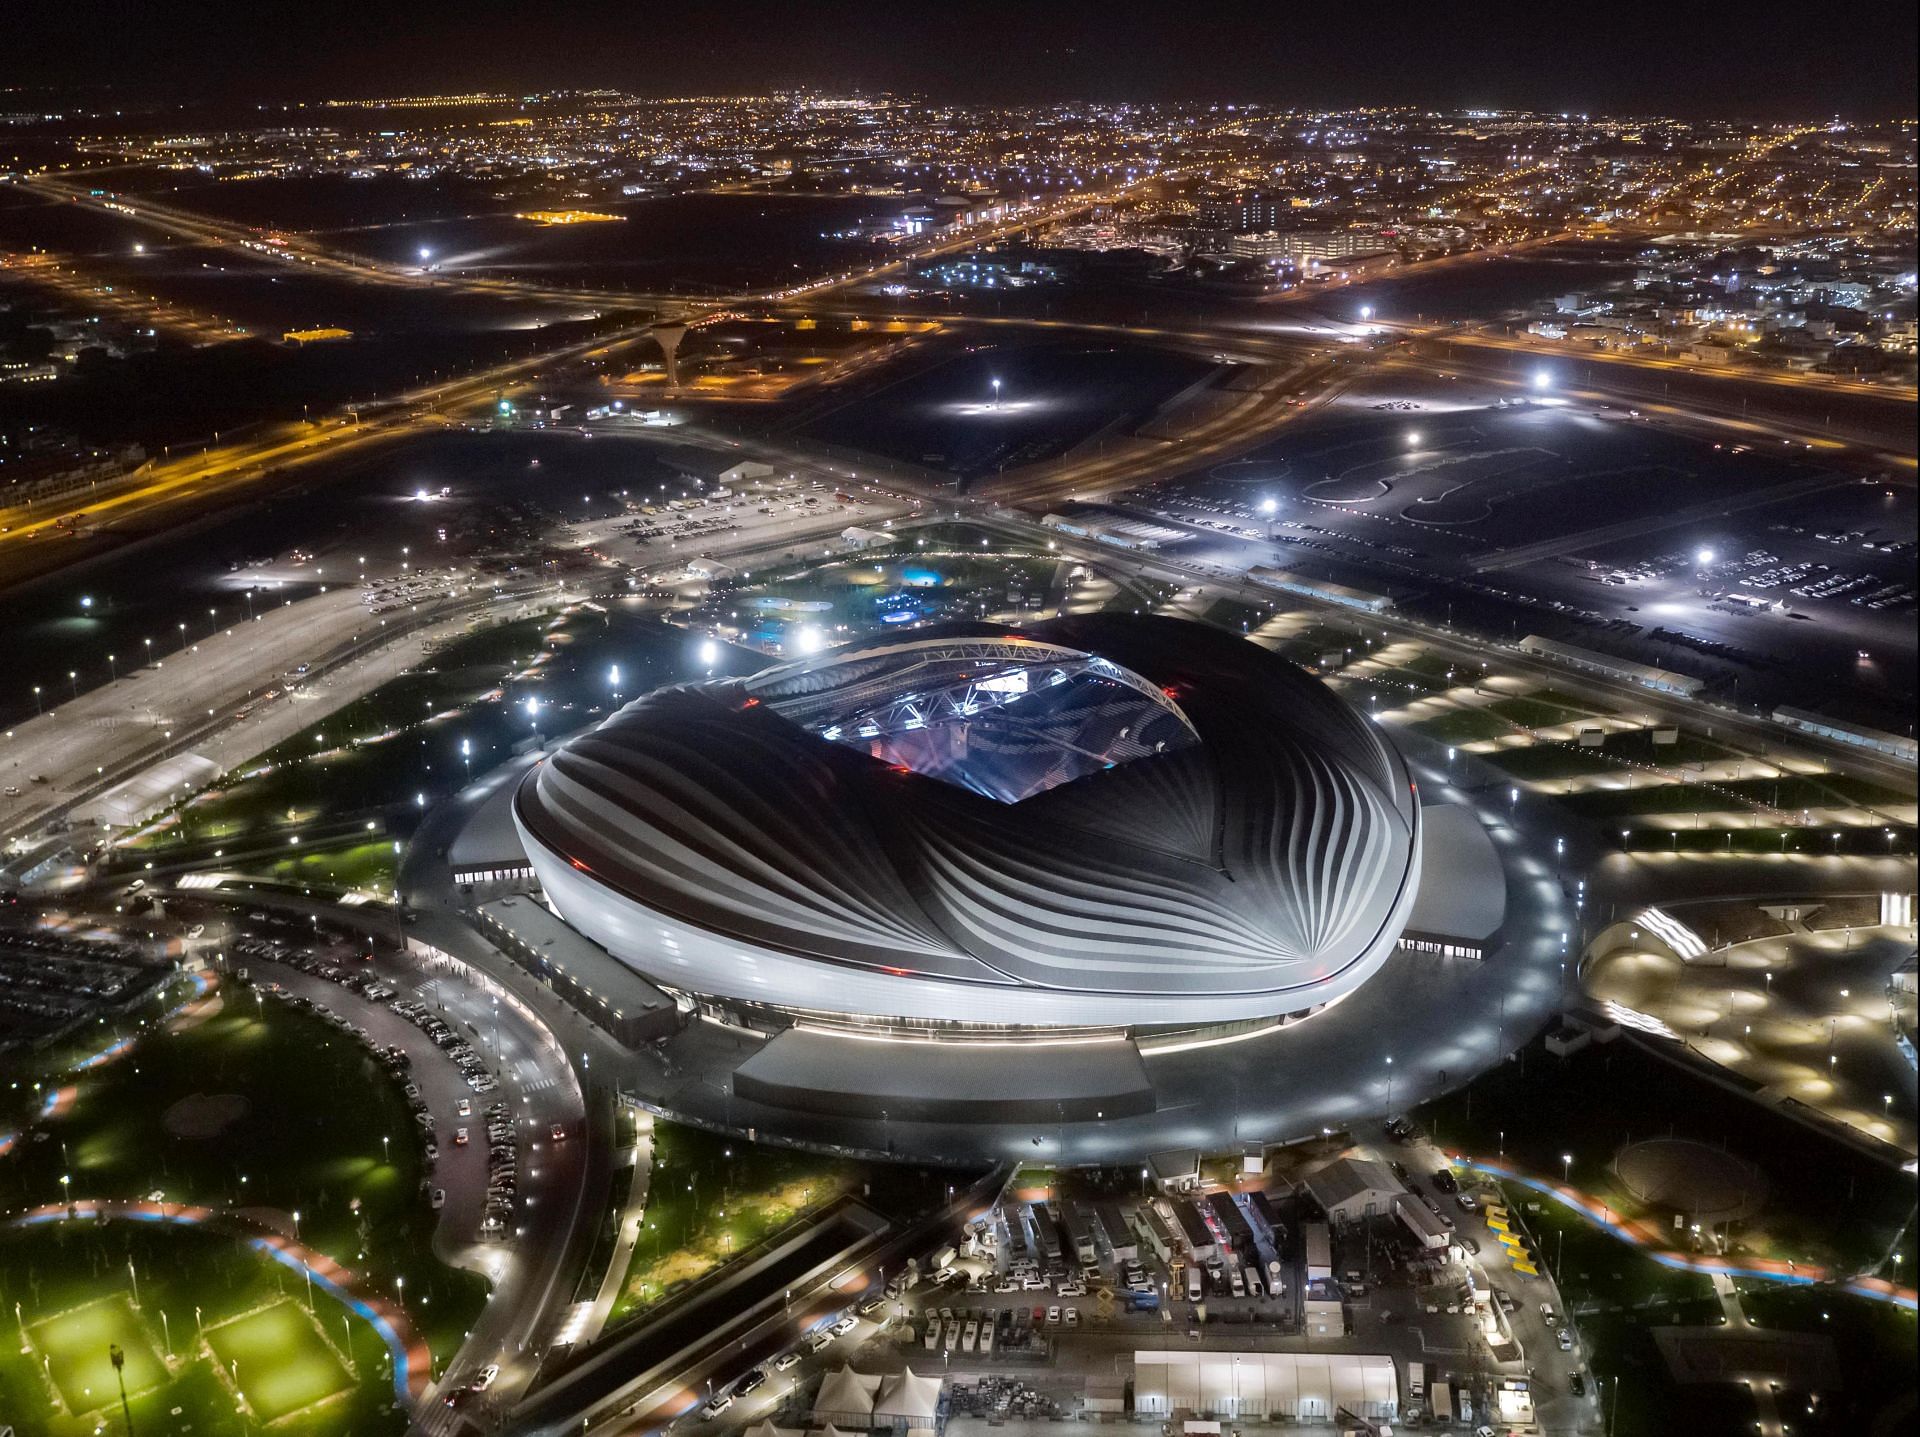 General Views of Al Wakrah Stadium